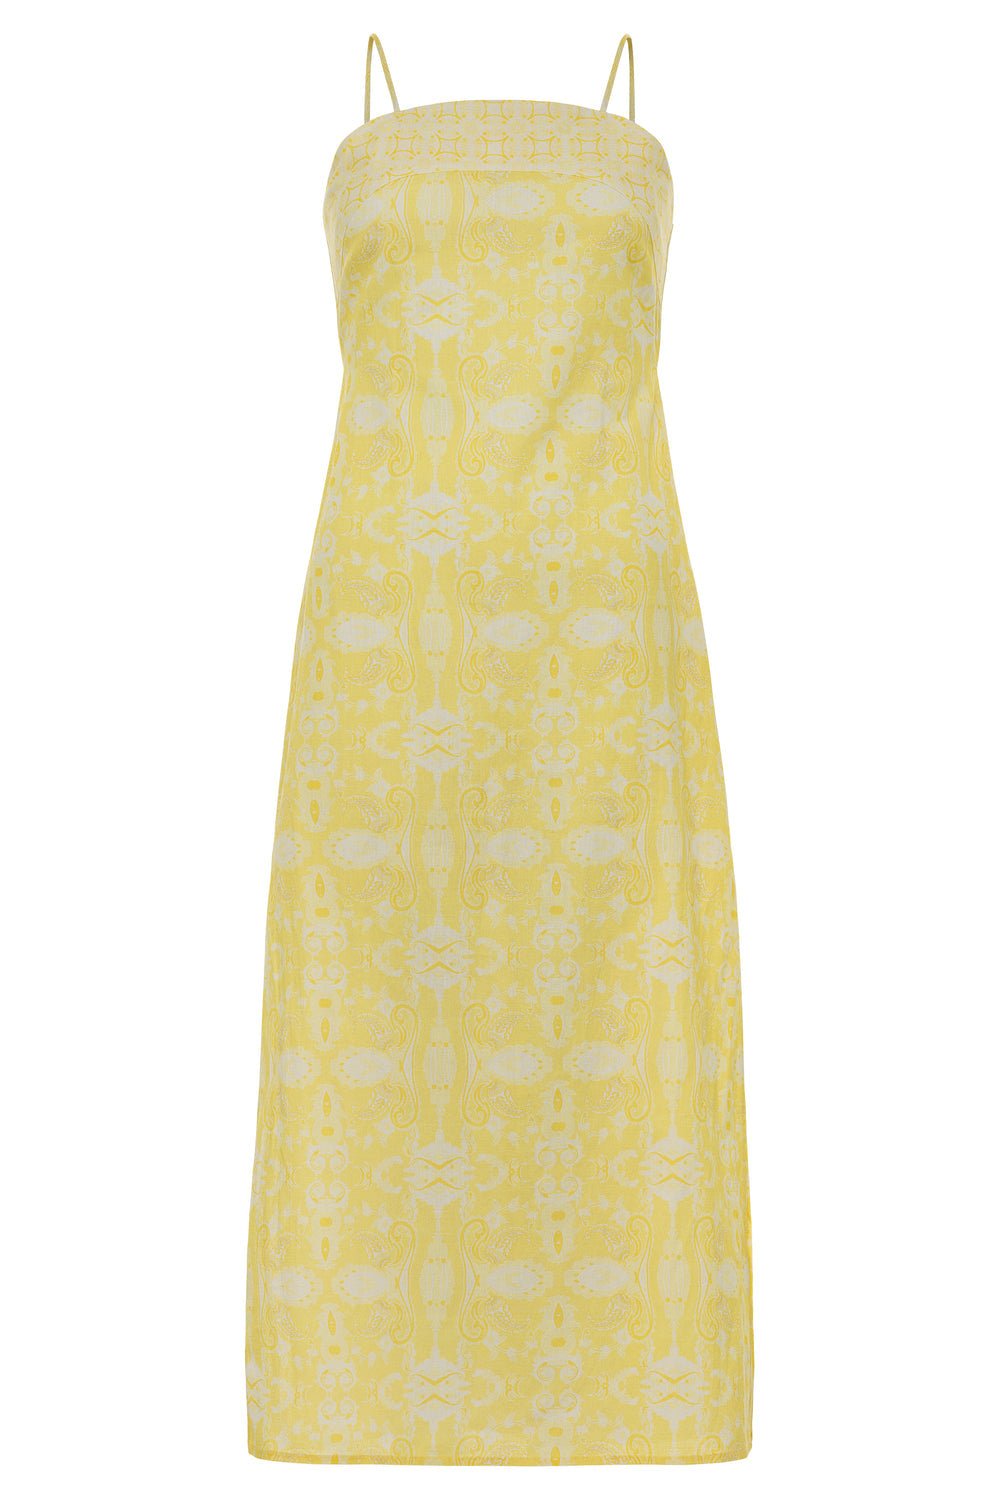 Anna Cate - Celeste Midi Dress: Lemon - Shorely Chic Boutique